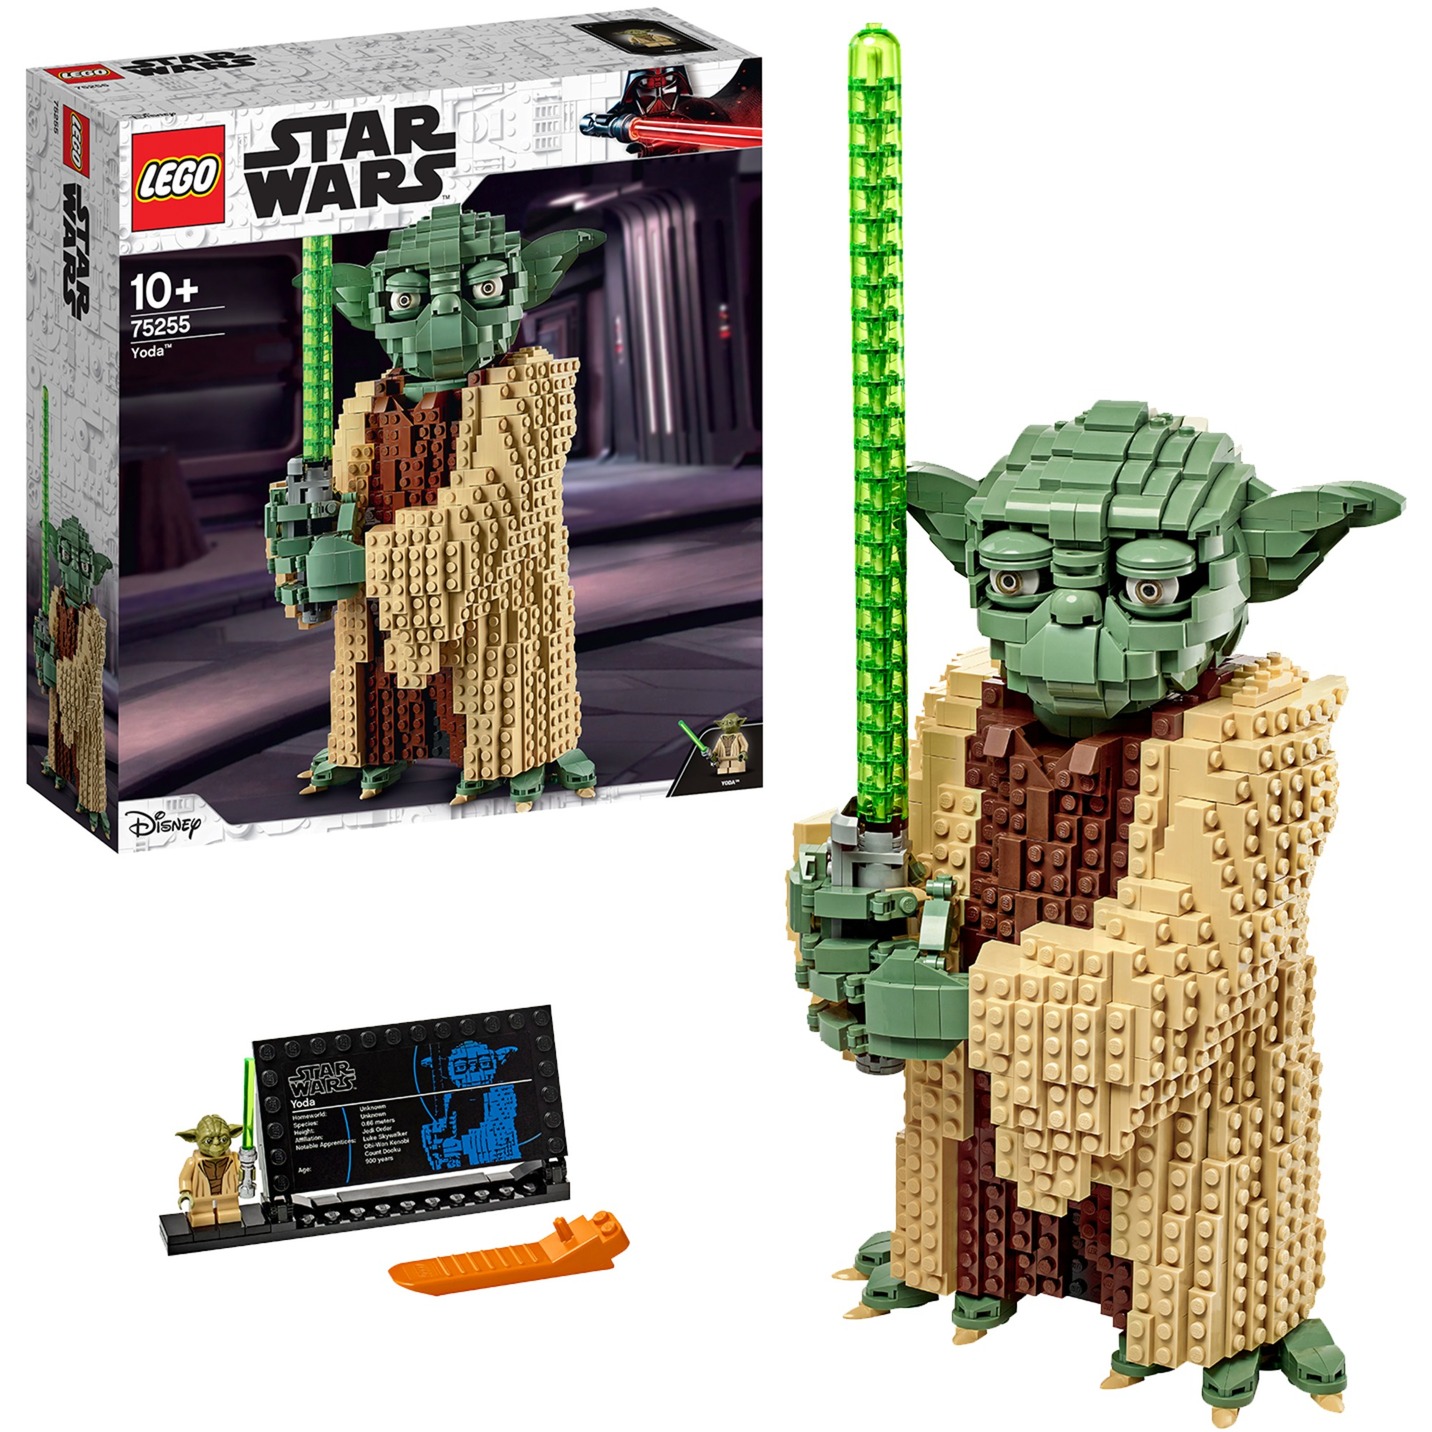 Spielzeug: Lego 75255 Star Wars Yoda